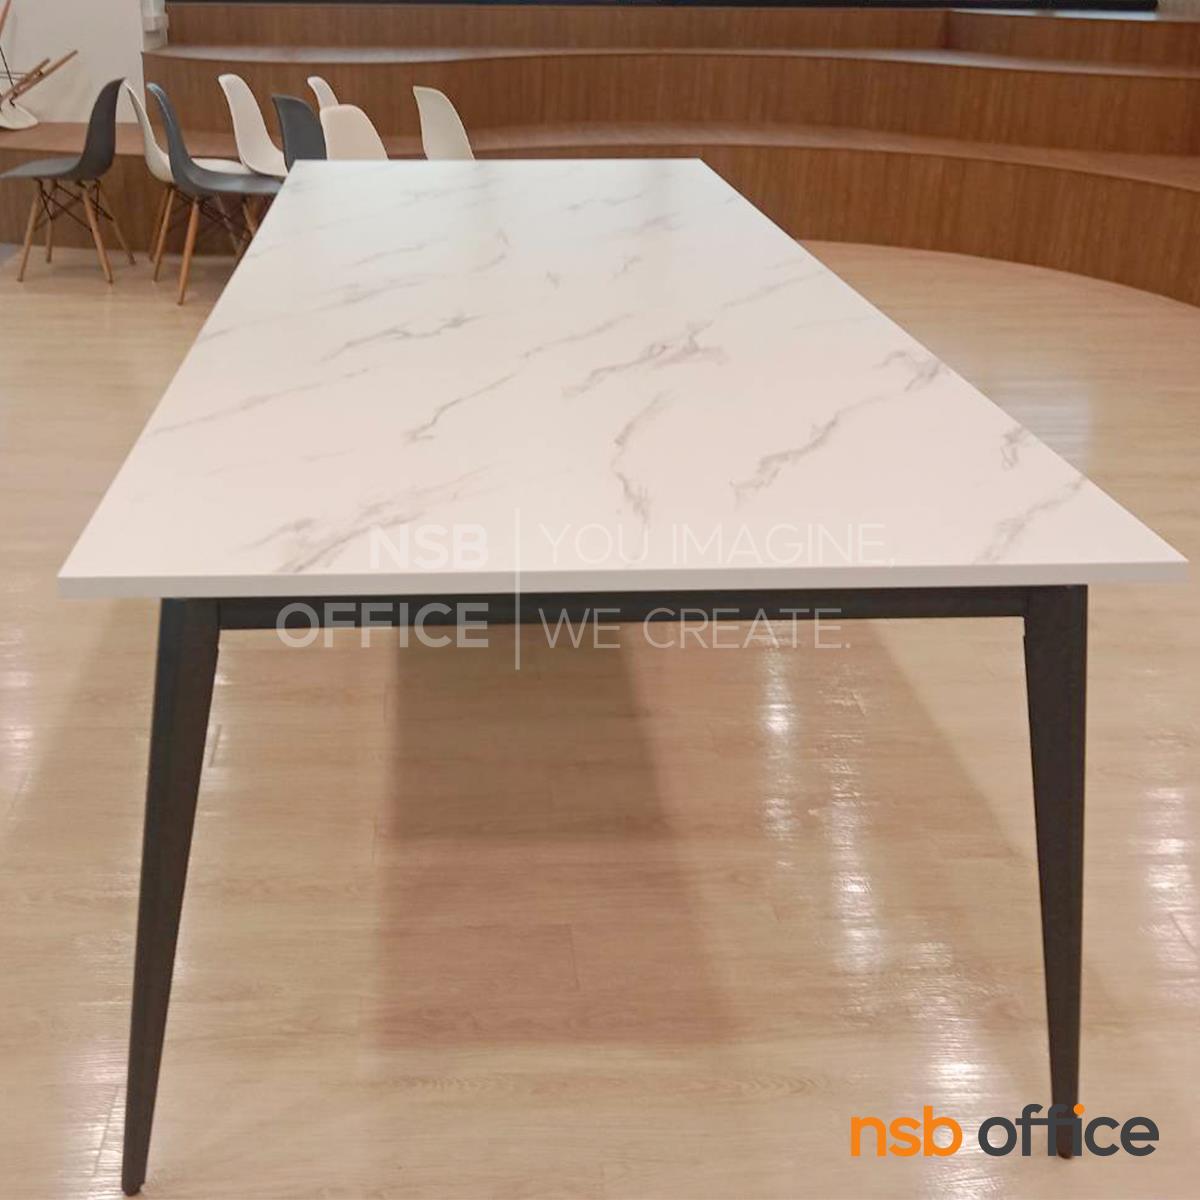 โต๊ะประชุม ขาเหล็กสีเทาฟ้า รุ่น Saphira (ซาฟิร่า)  ขนาด 320W*120D cm. 